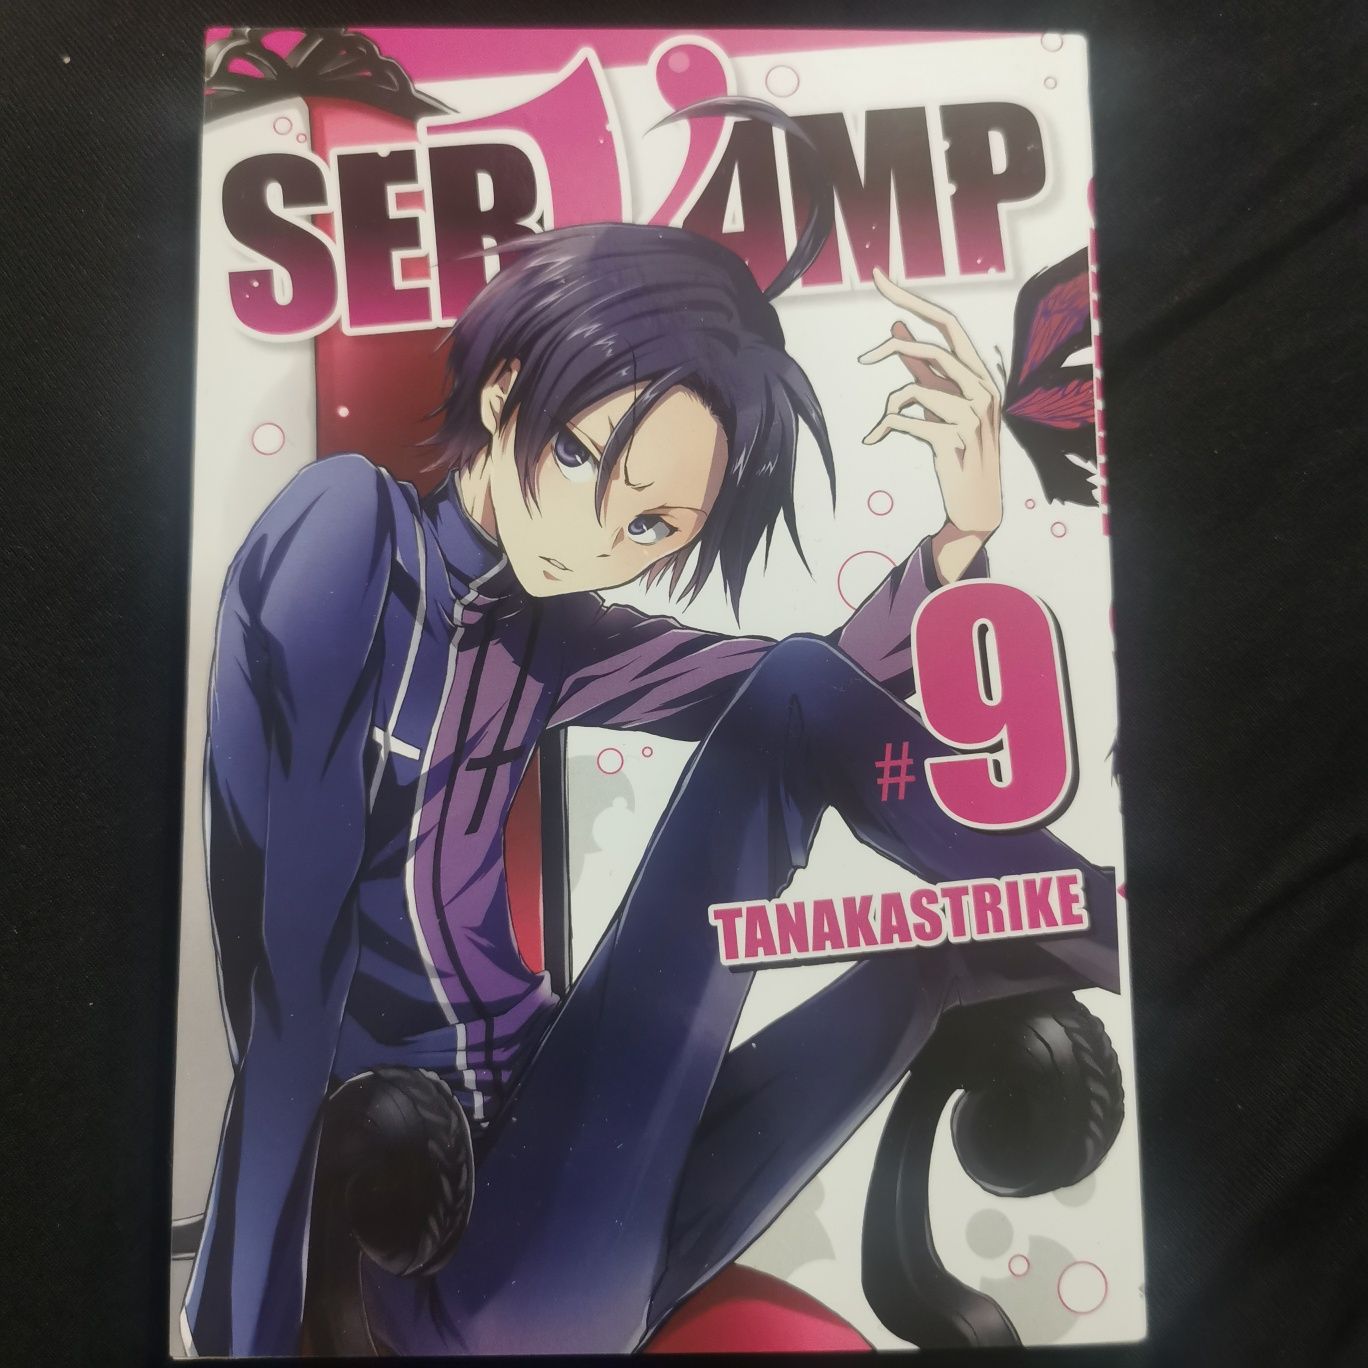 Nowa manga. Servamp #9